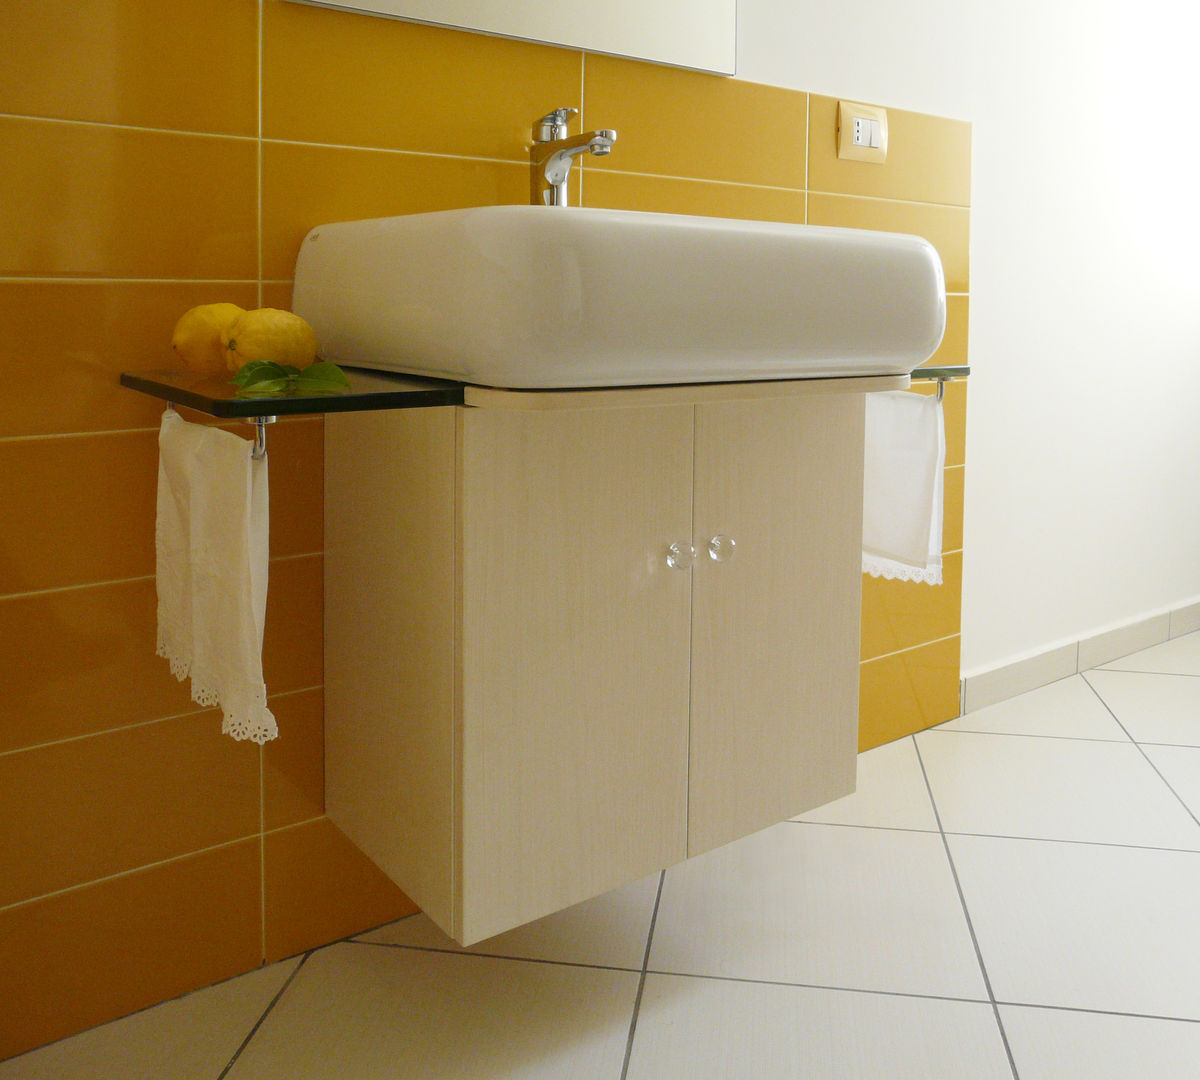 Ristrutturazione e divisione in due unità abitative, Interni d' Architettura Interni d' Architettura Modern bathroom Sinks